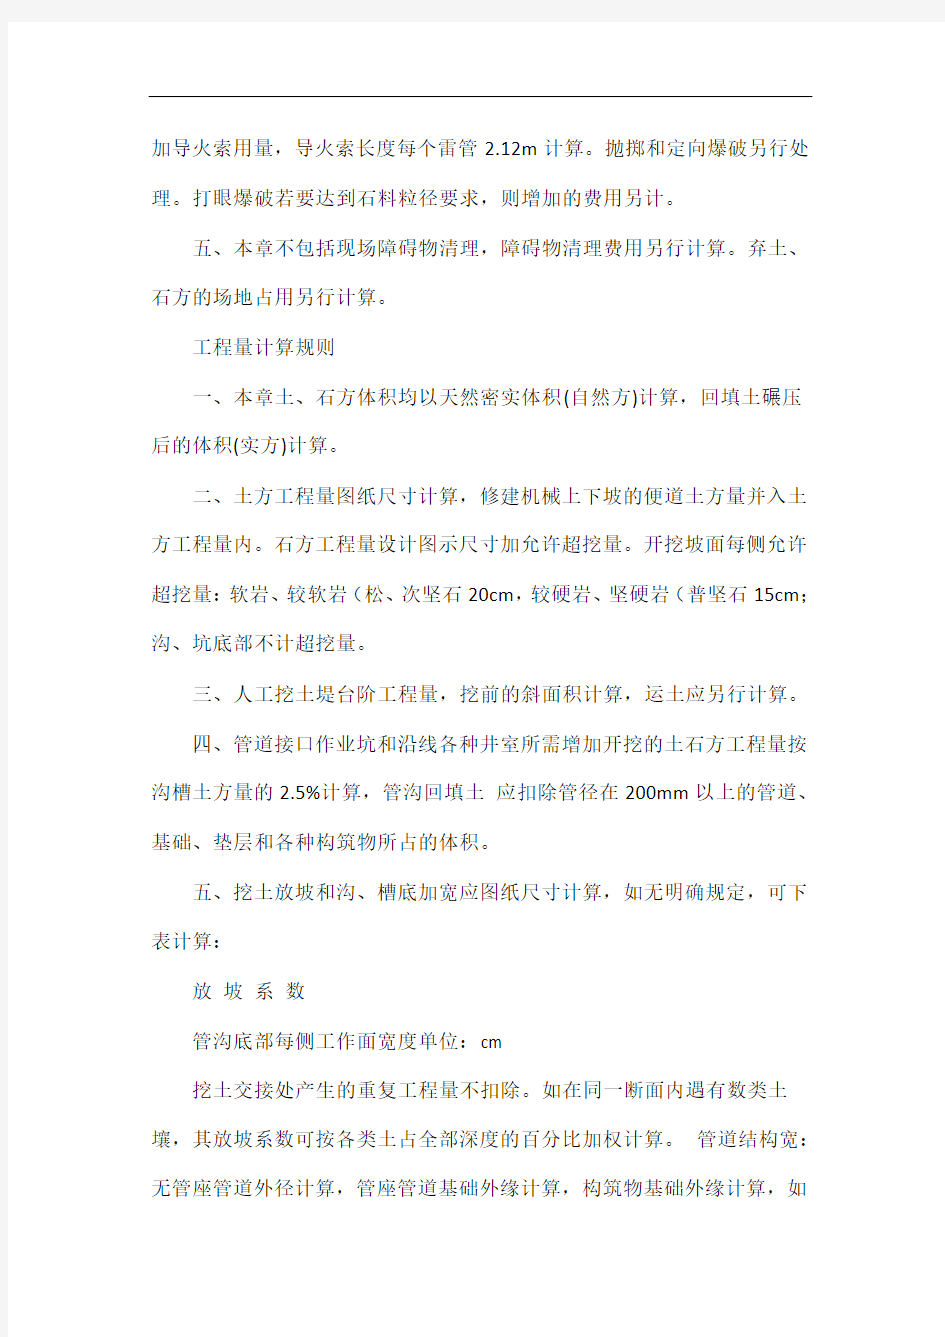 2014年湖南省市政消耗定额解释说明及工程量计算规则